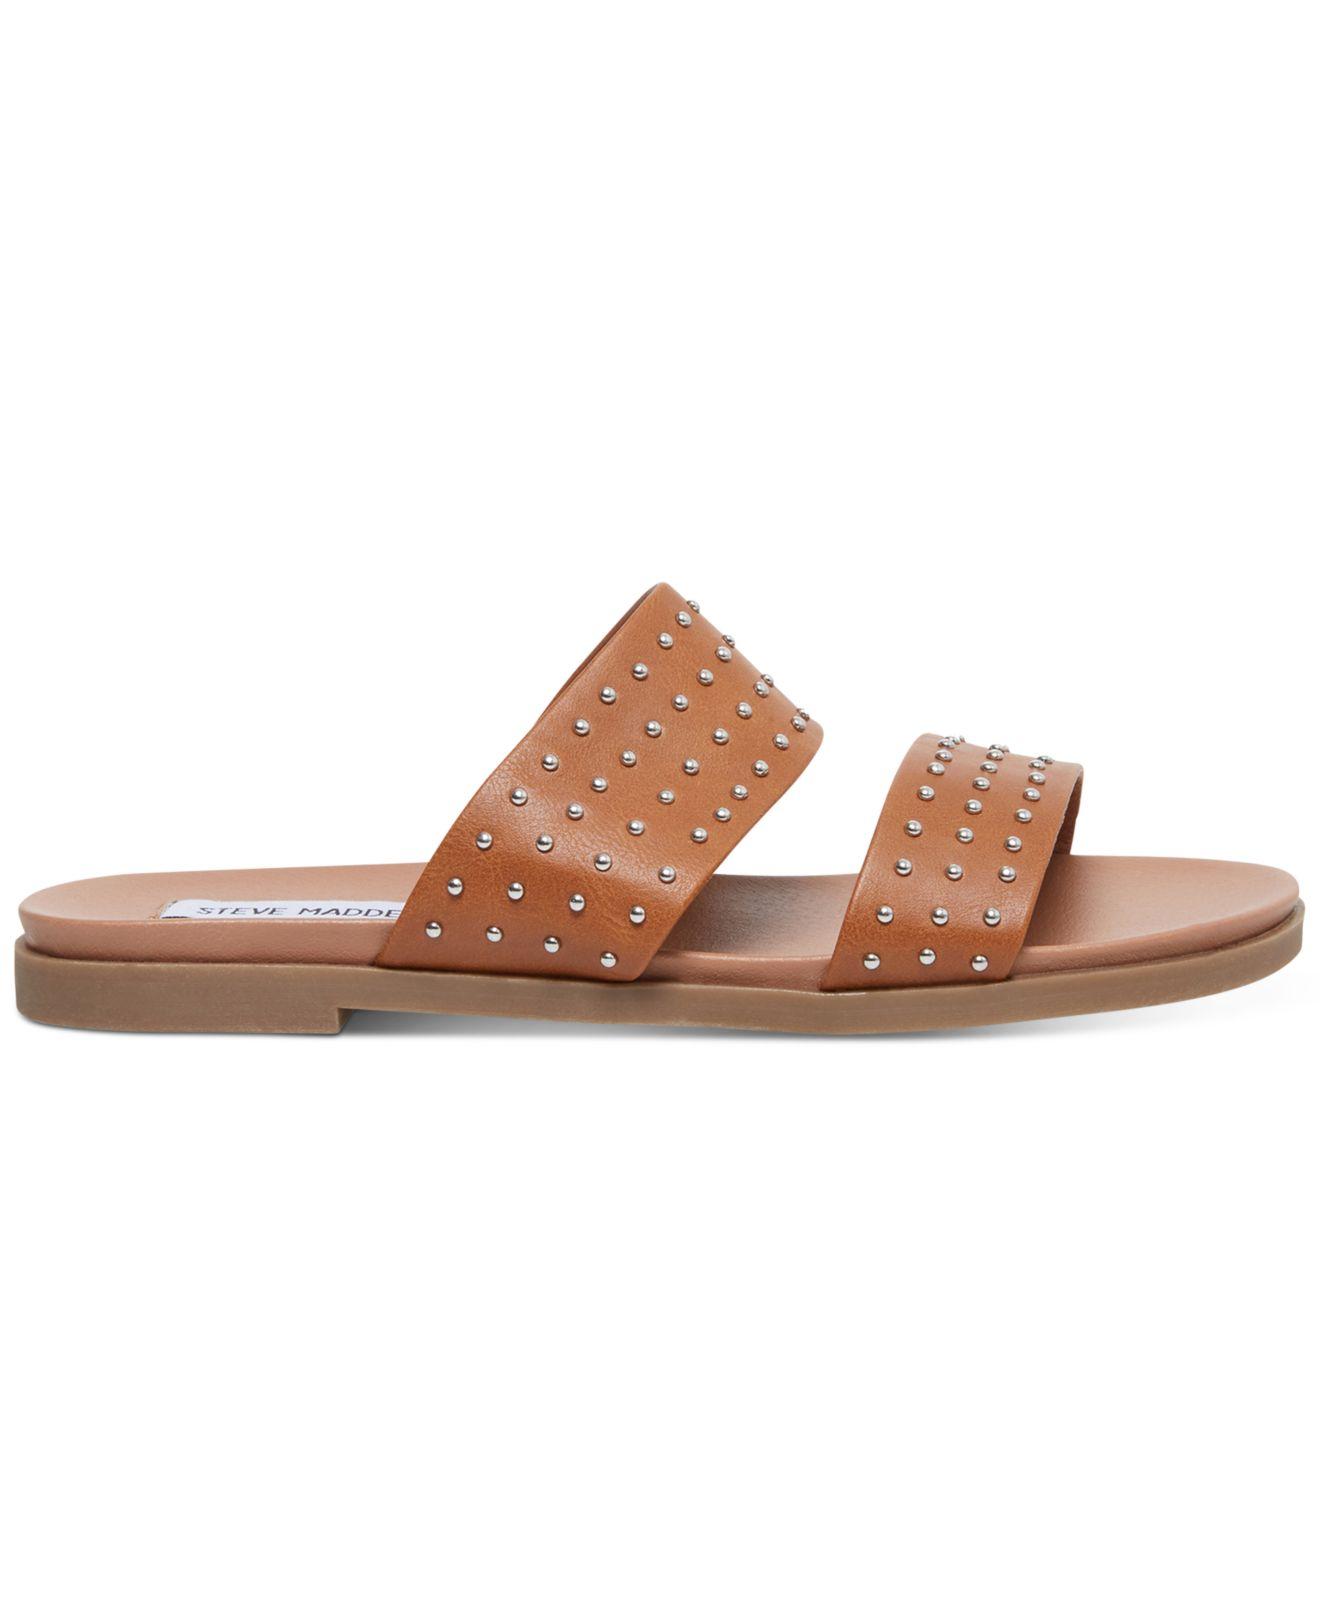 Steve Madden Dede Studded Slide Sandals in Tan (Brown) - Lyst